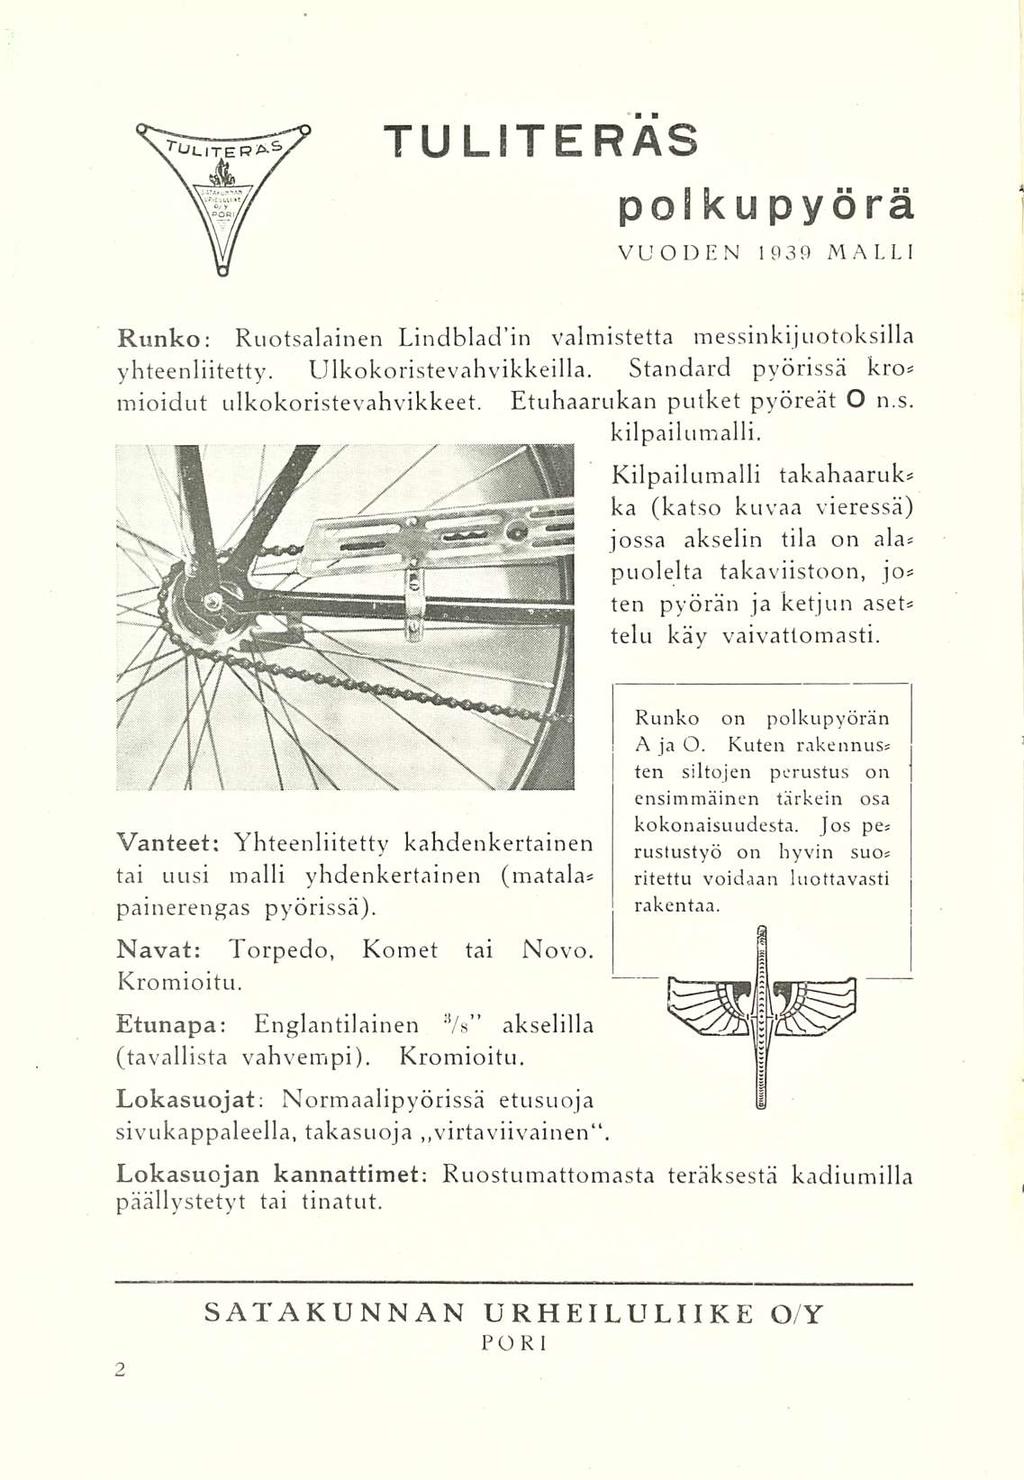 TU LITE RAS pos ku pyörä VUODEN 1939 MALLI Runko: Ruotsalainen Lindbladin valmistetta messinkijuotoksilla yhteenliitetty. LJlkokoristevahvikkeilla.